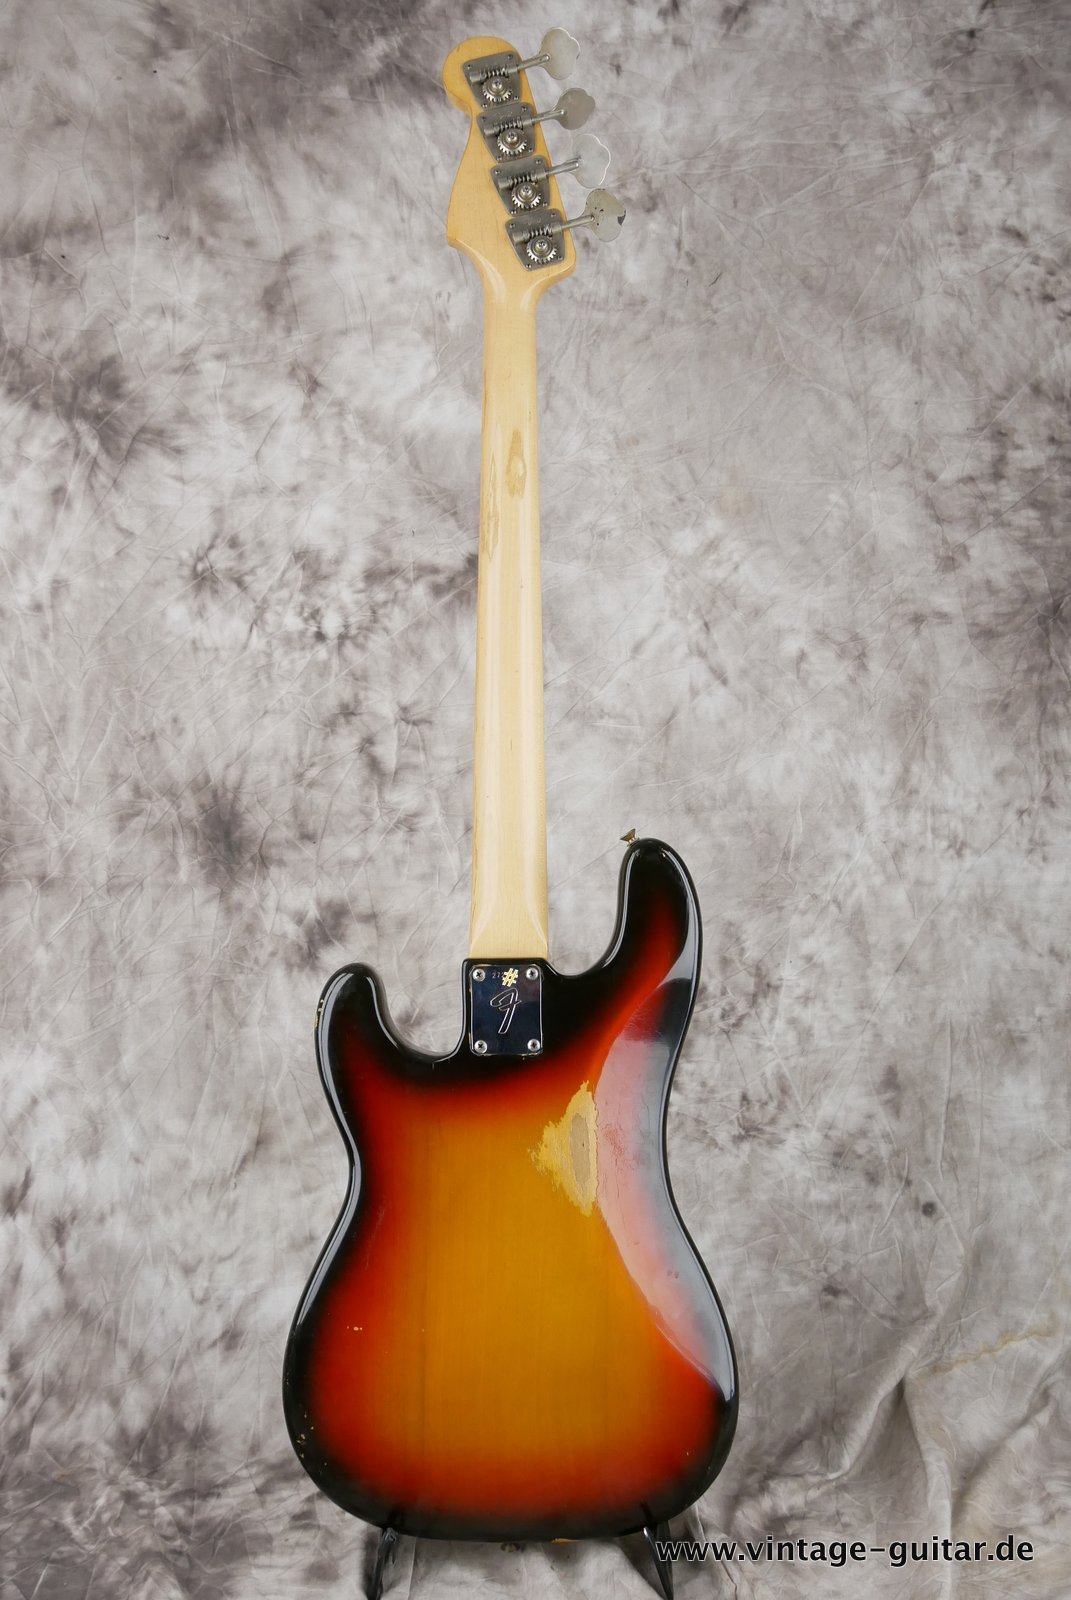 Fender-Precision-Bass-sunburst-1969-012.JPG